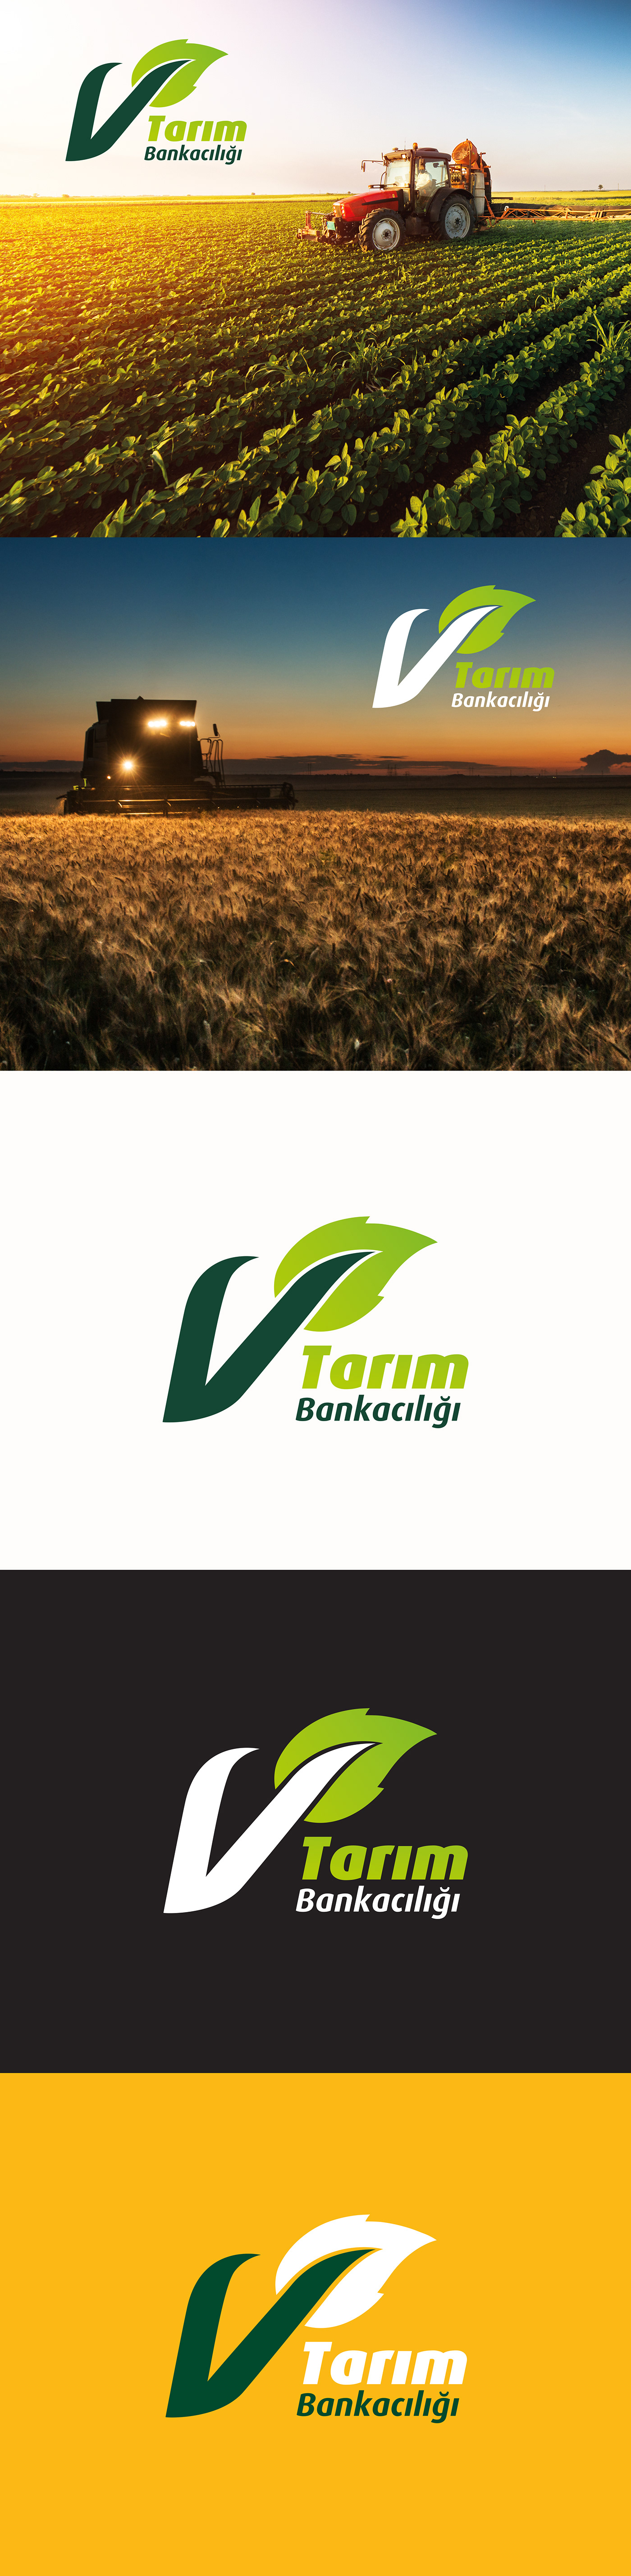 Bank banking design farm logo Tarım vakıfbank